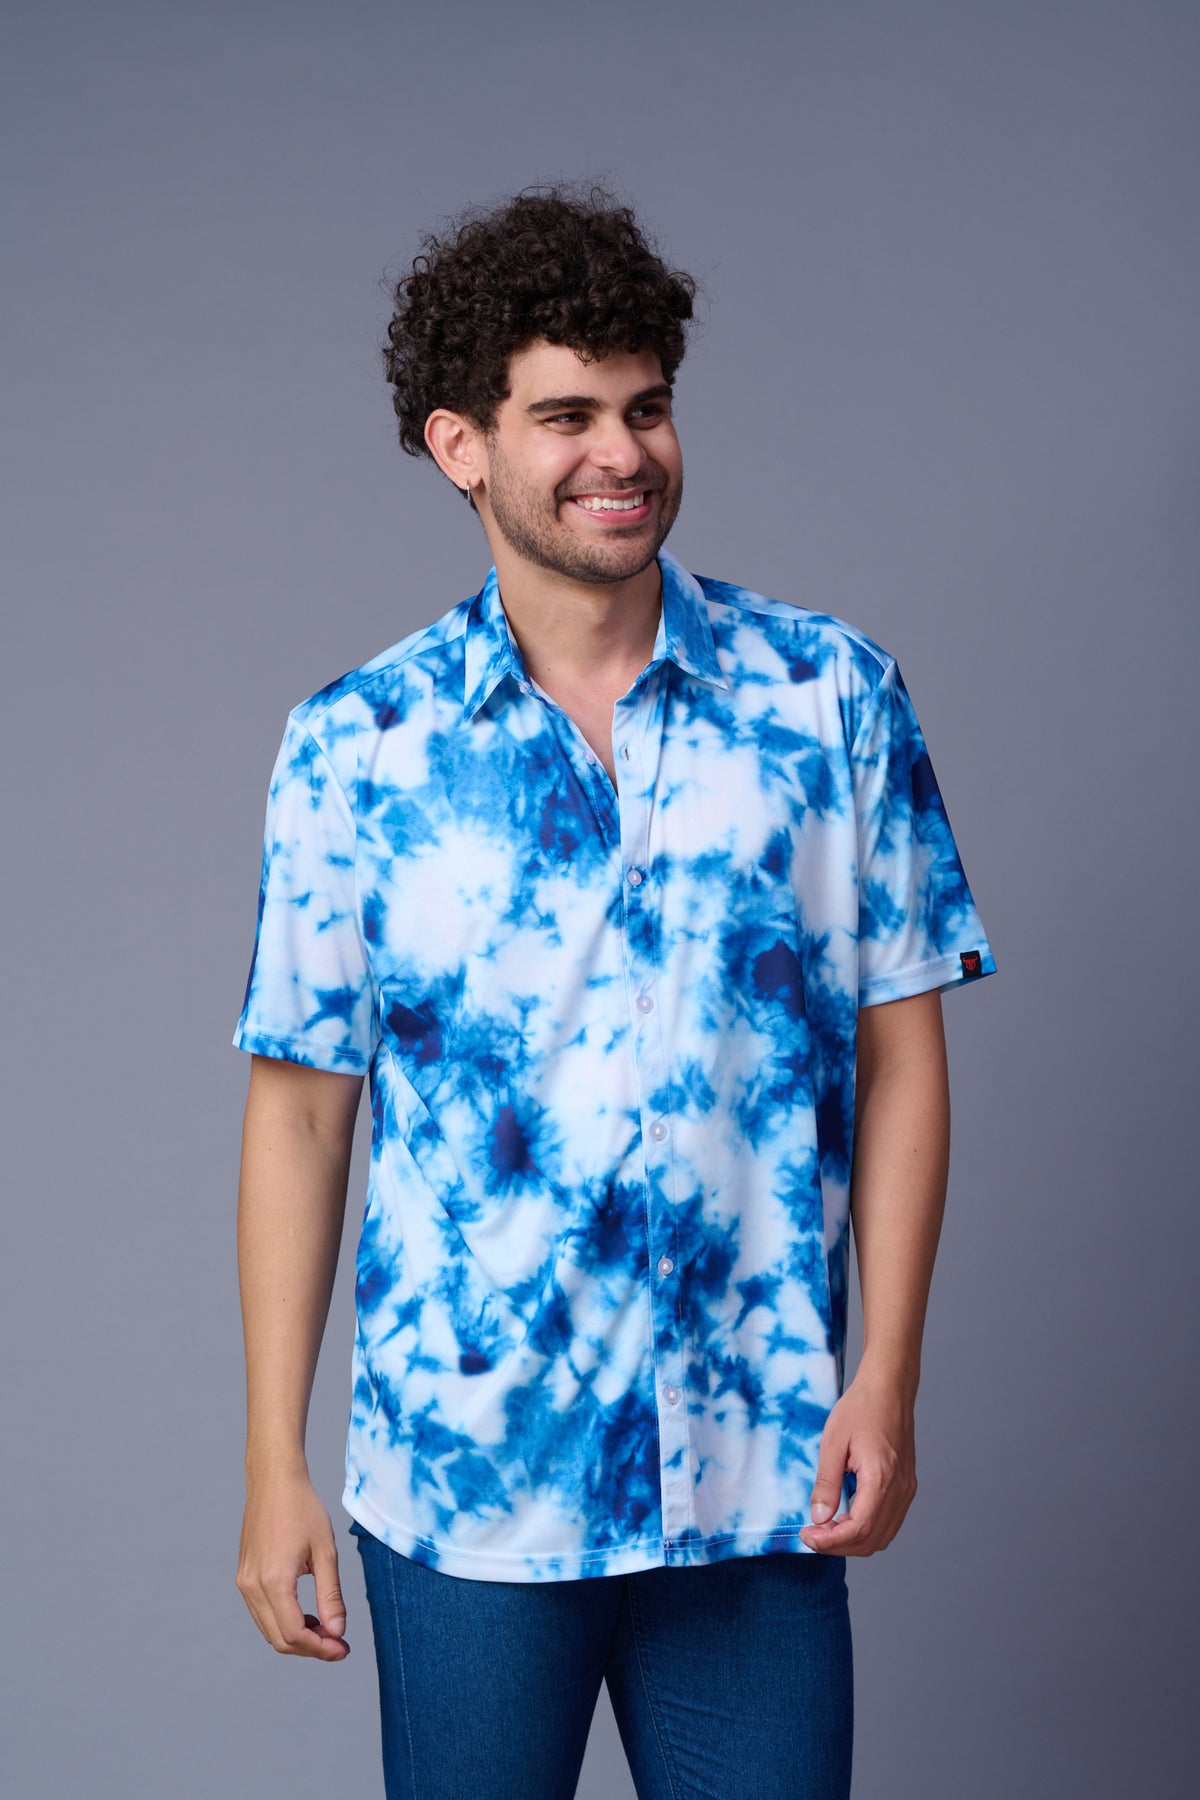 Tie Dye Design Printed White & Blue Shirt for Men